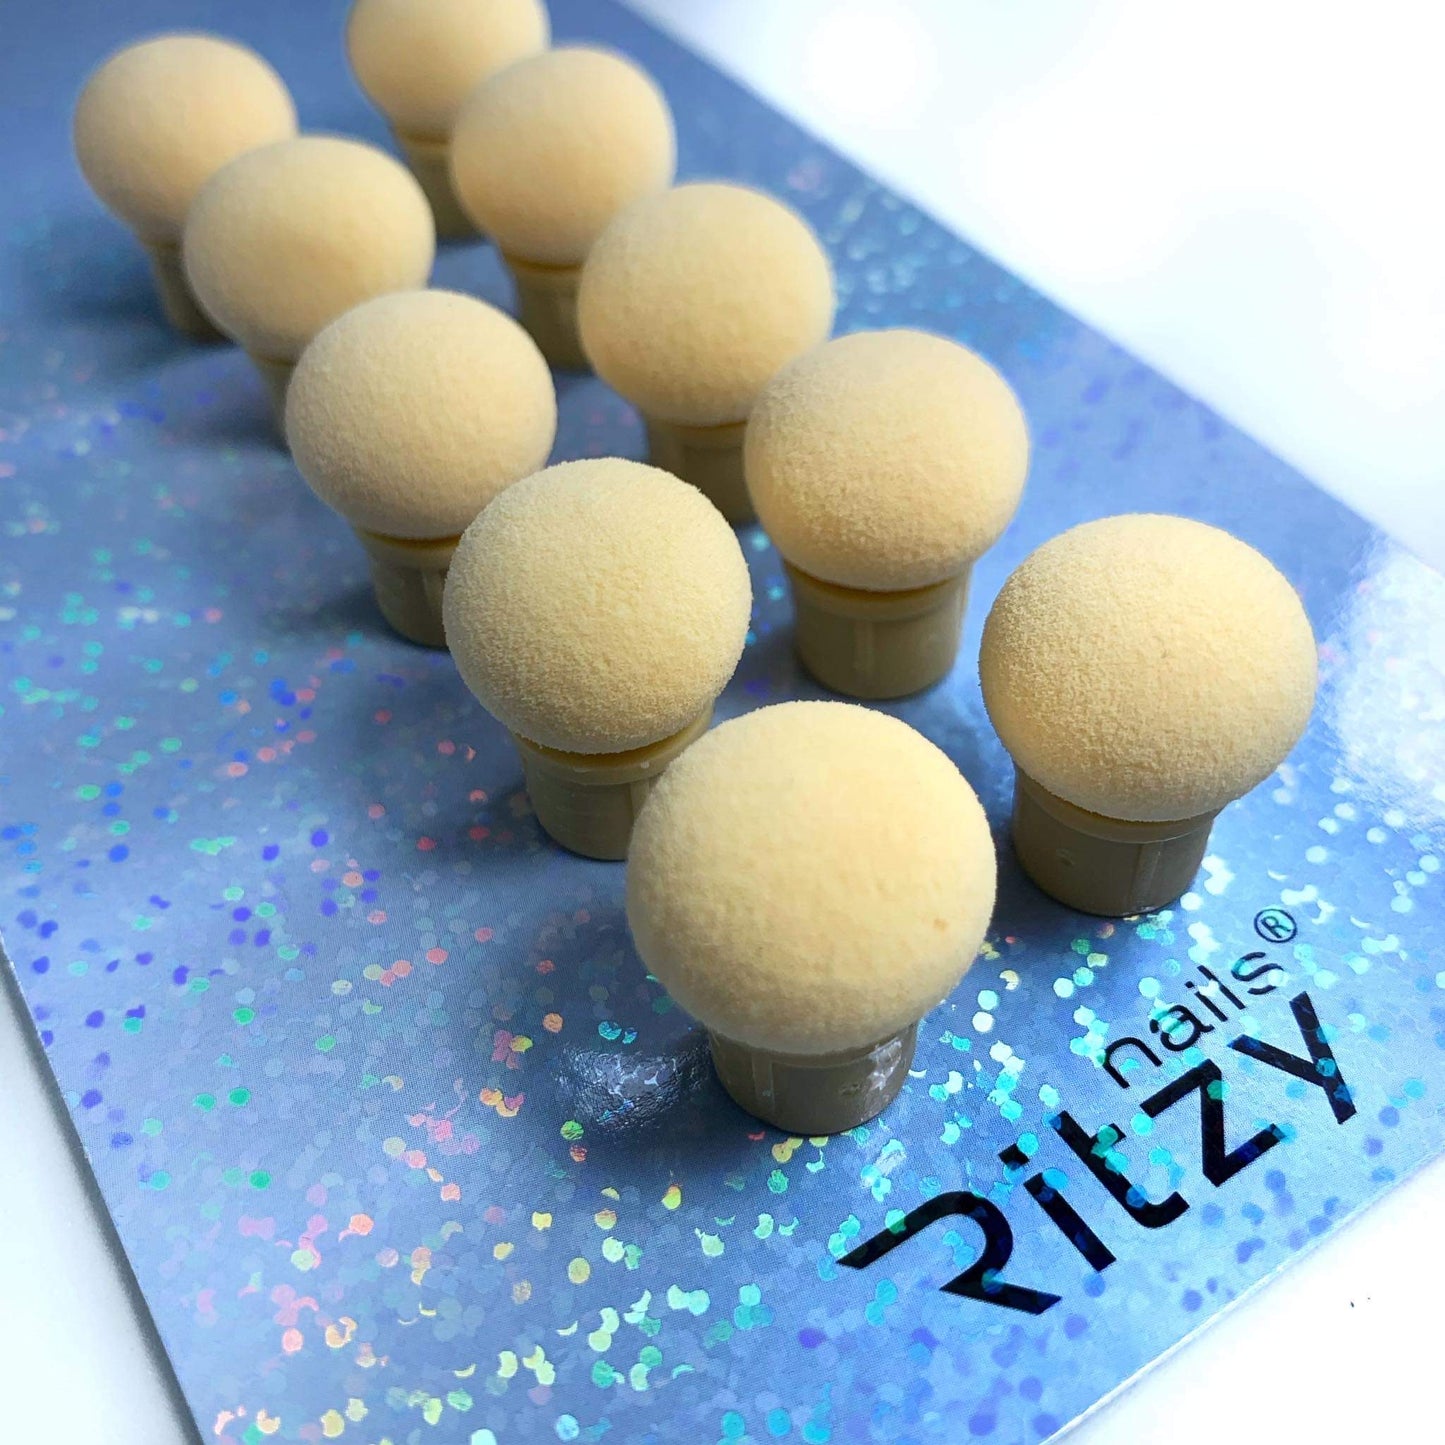 Ritzy 10 sponges ( for Ritzy “Sponge’” brush)